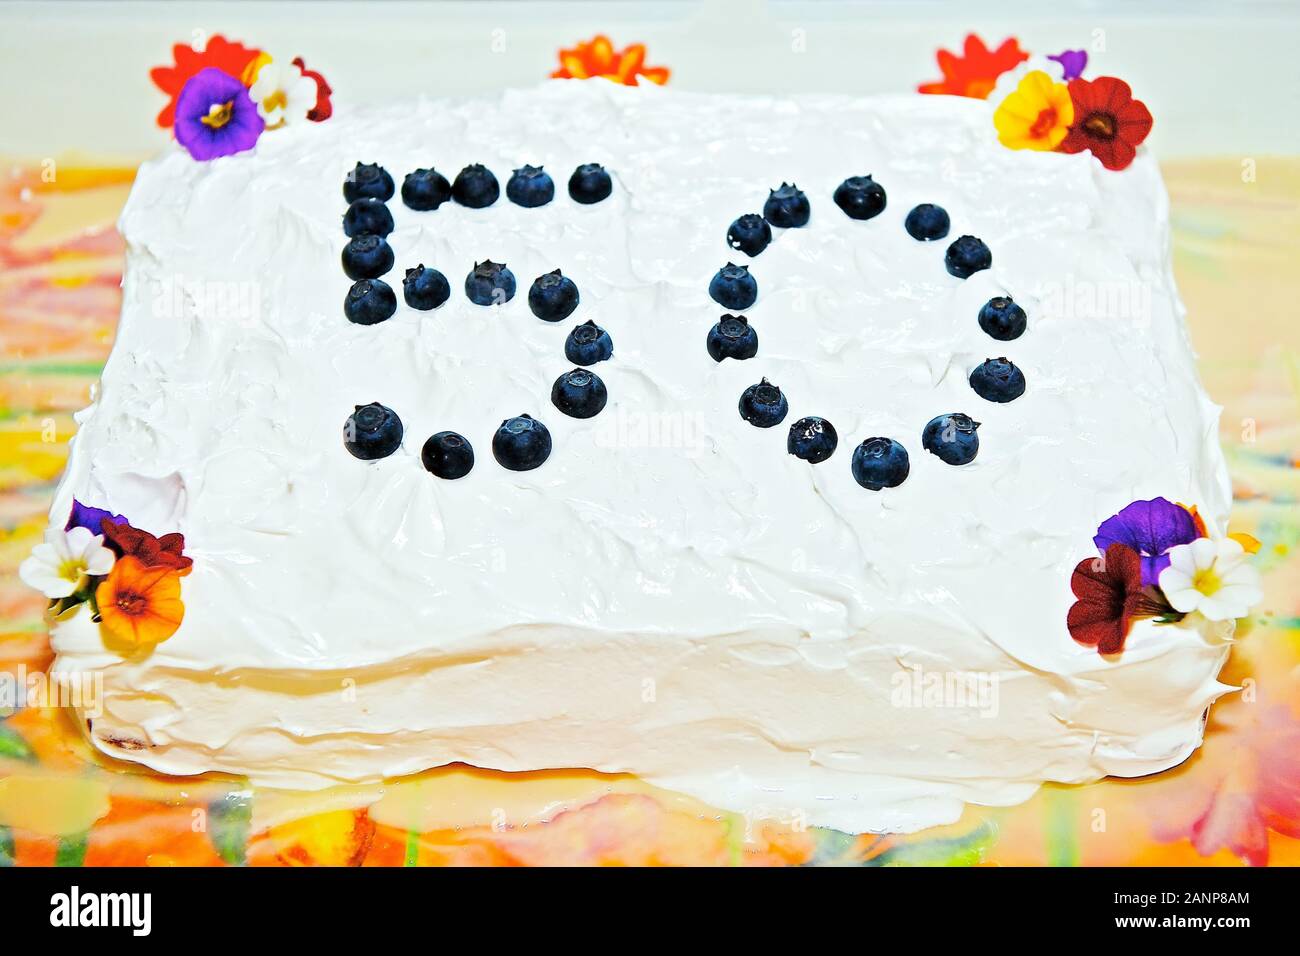 Torta 50 Años para Mujer - Repostería Kathy